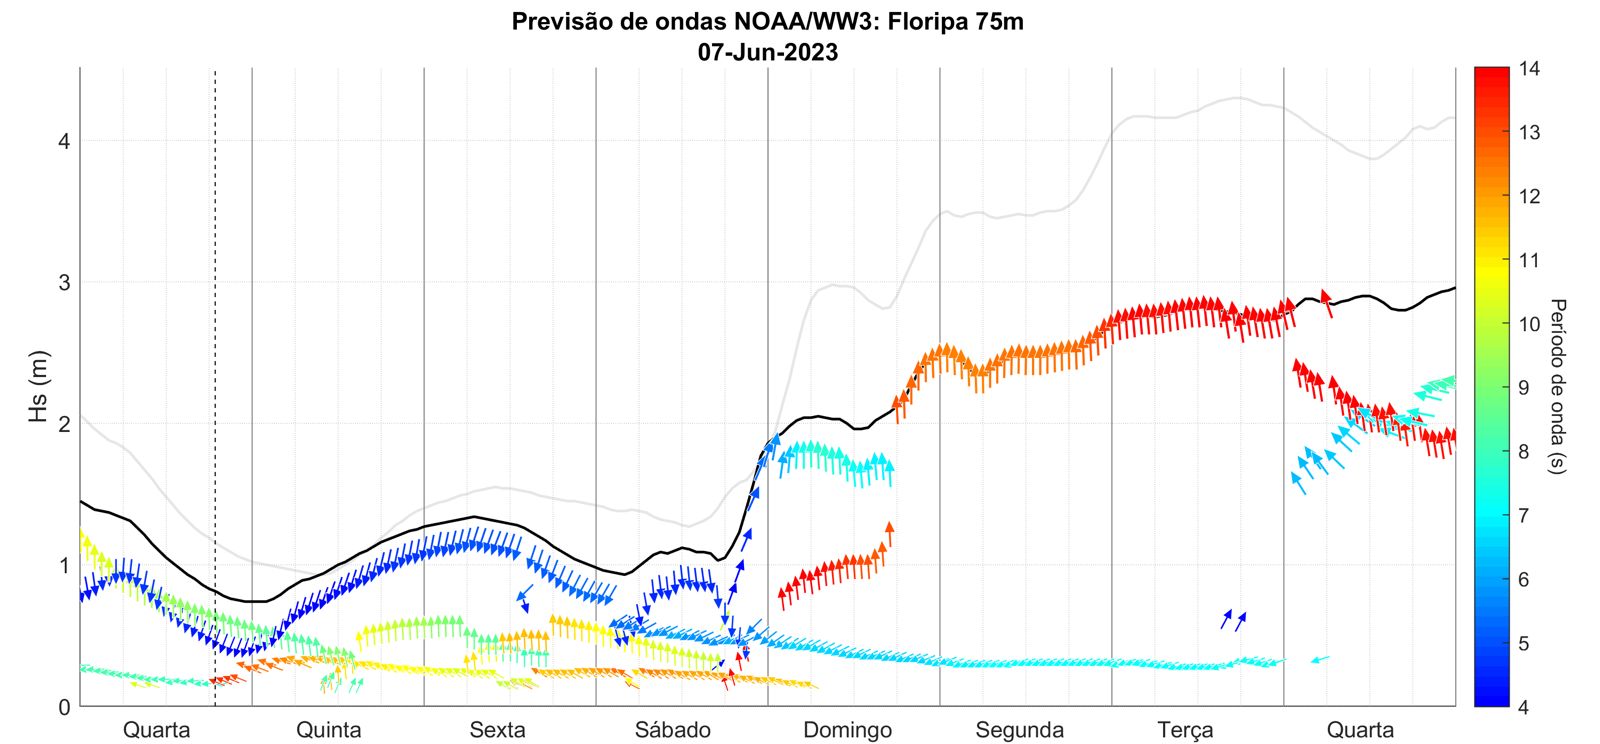 Previsão de ondas para Floripa apresenta chegada da ondulação de S-SW no domingo, virando para S na segunda, quando alcança os 3 metros de altura (na praia deve chegar a 2,5 m). Ondas que se mantém grandes até quarta-feira.